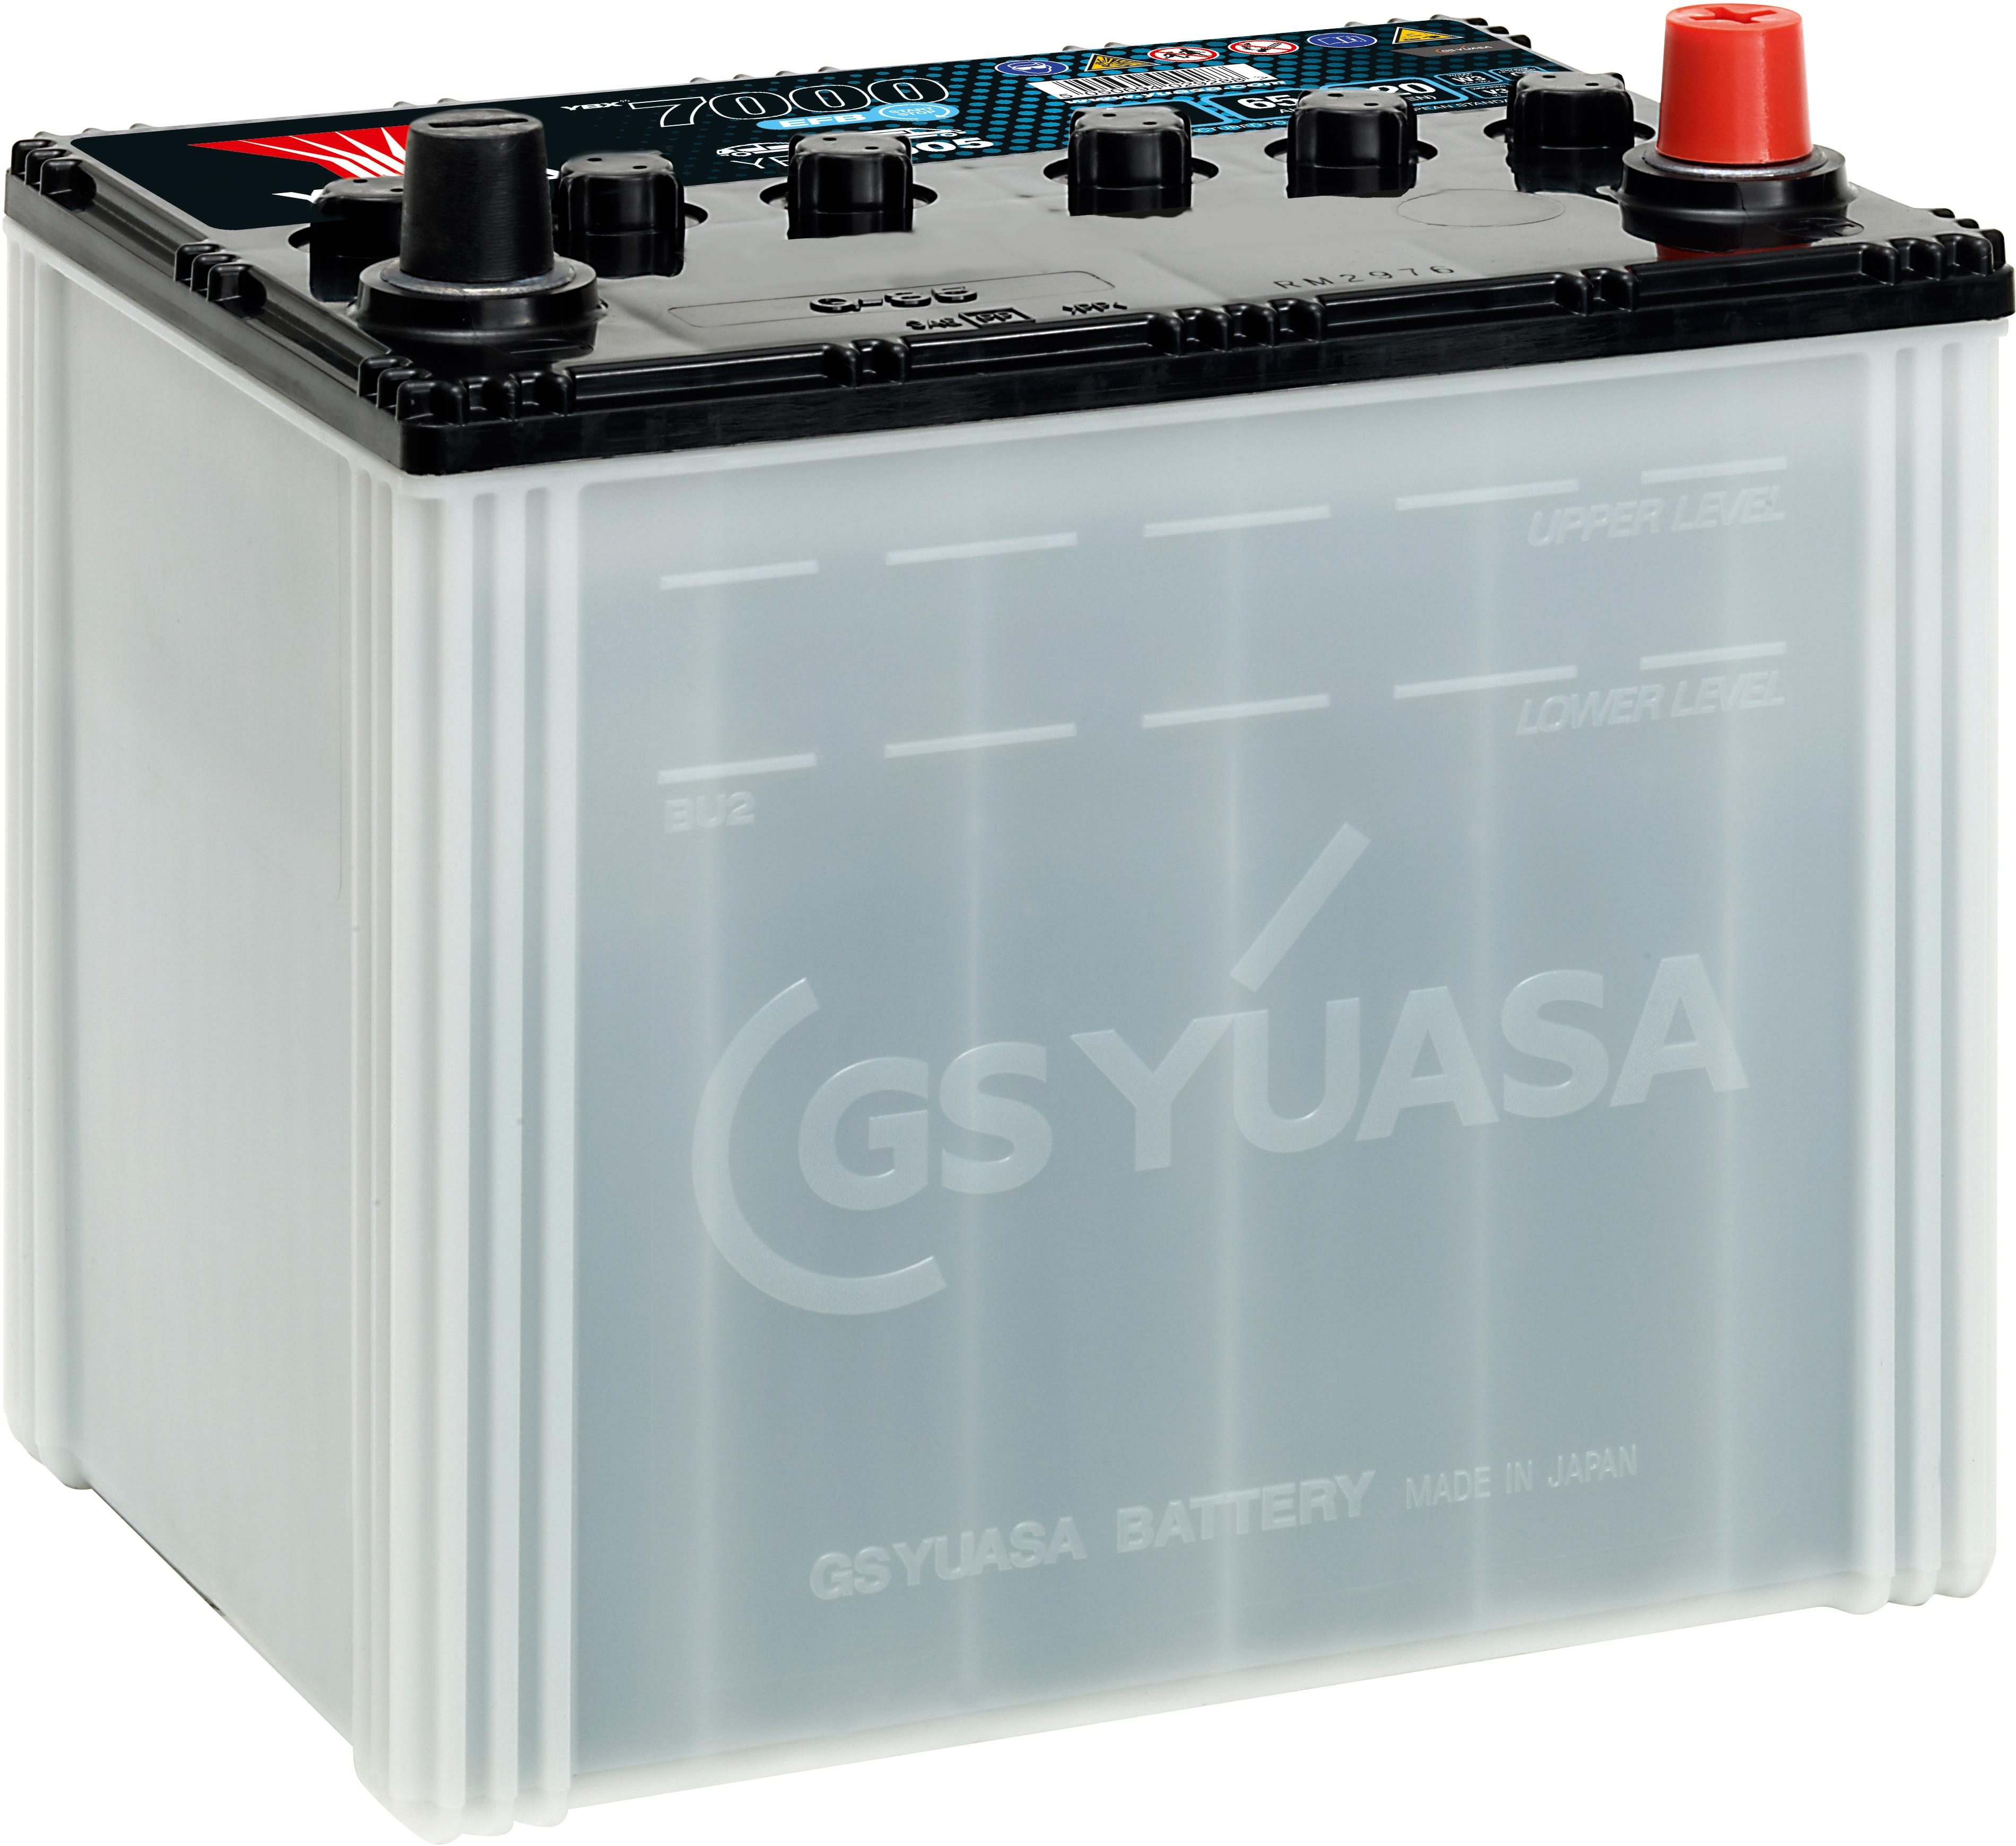 Ybx7005 (Q55/Q85) 12V 65Ah 620A Yuasa Efb Start Stop Battery